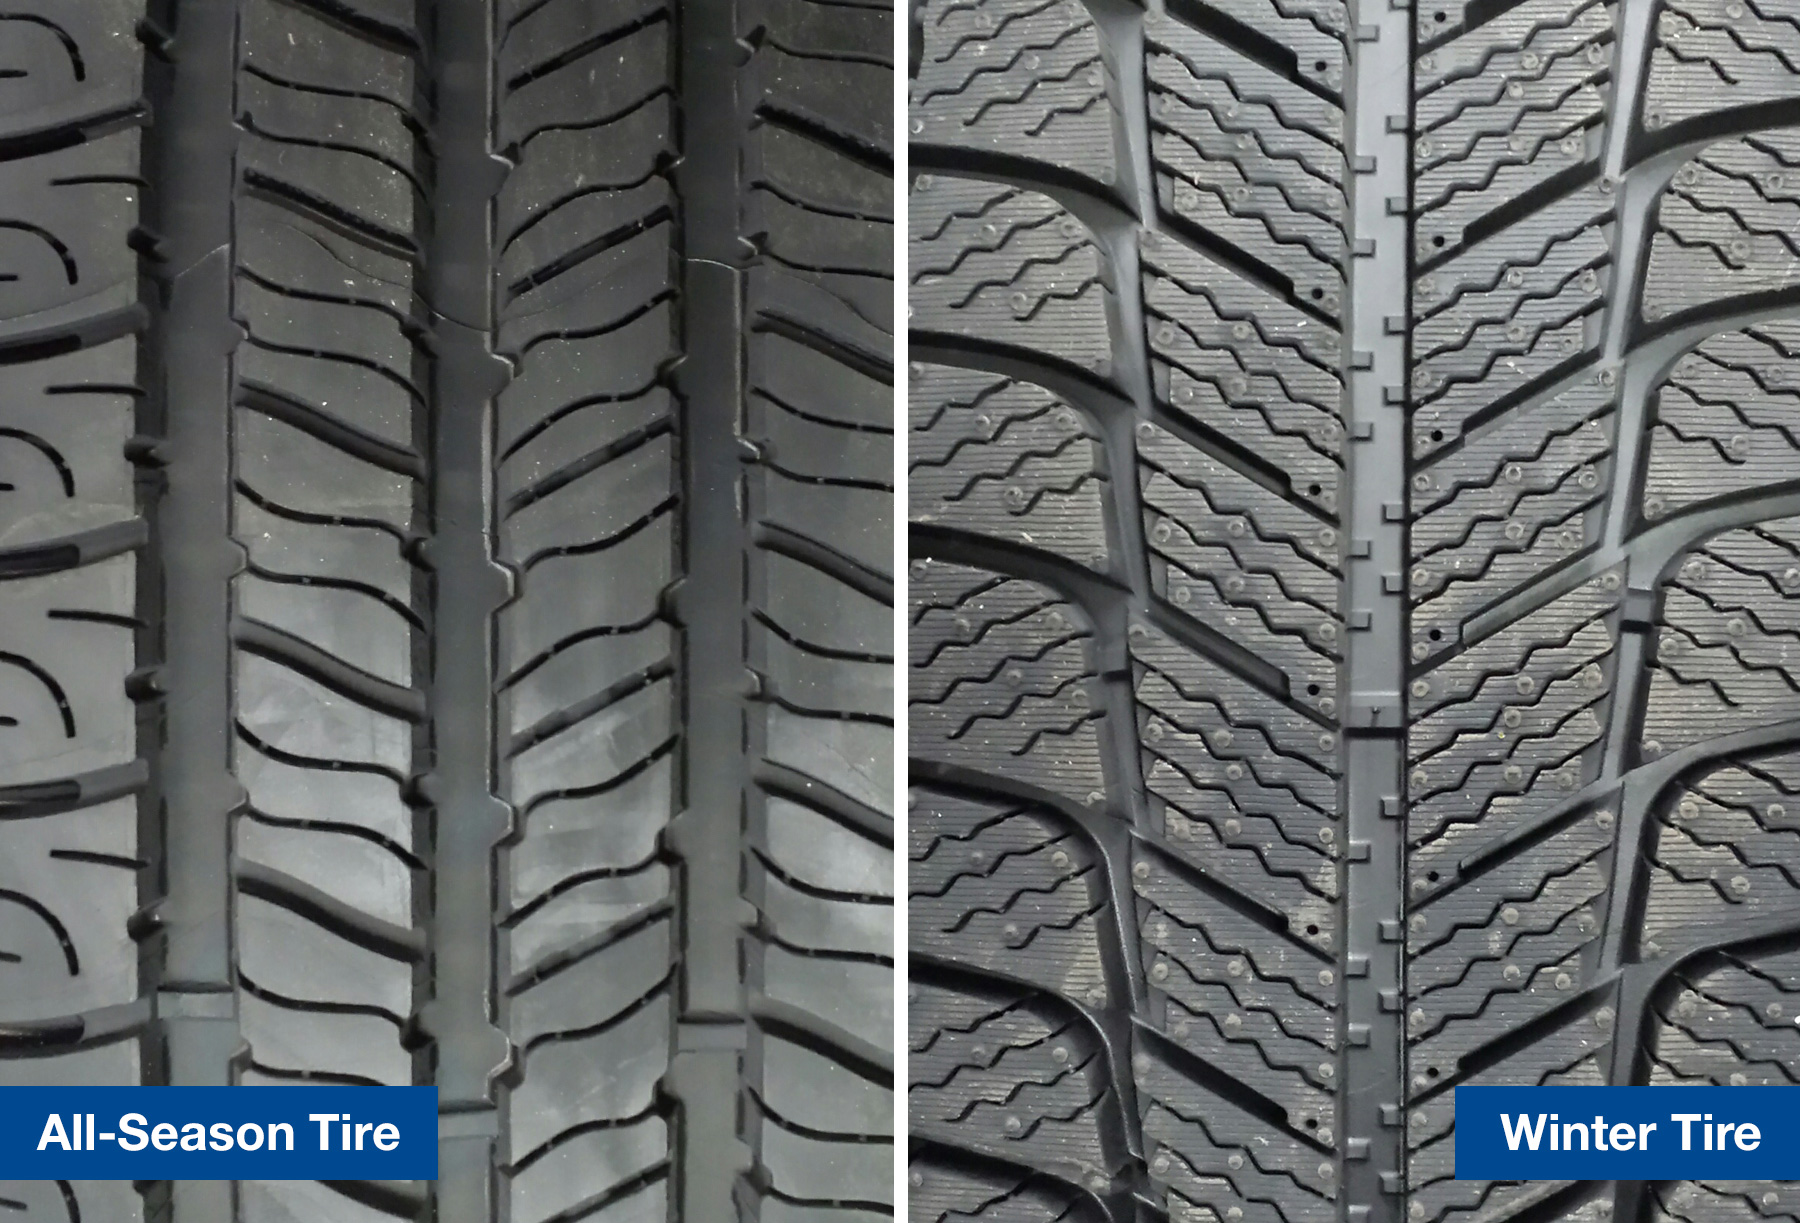 Close up view of winter tire tread vs all season